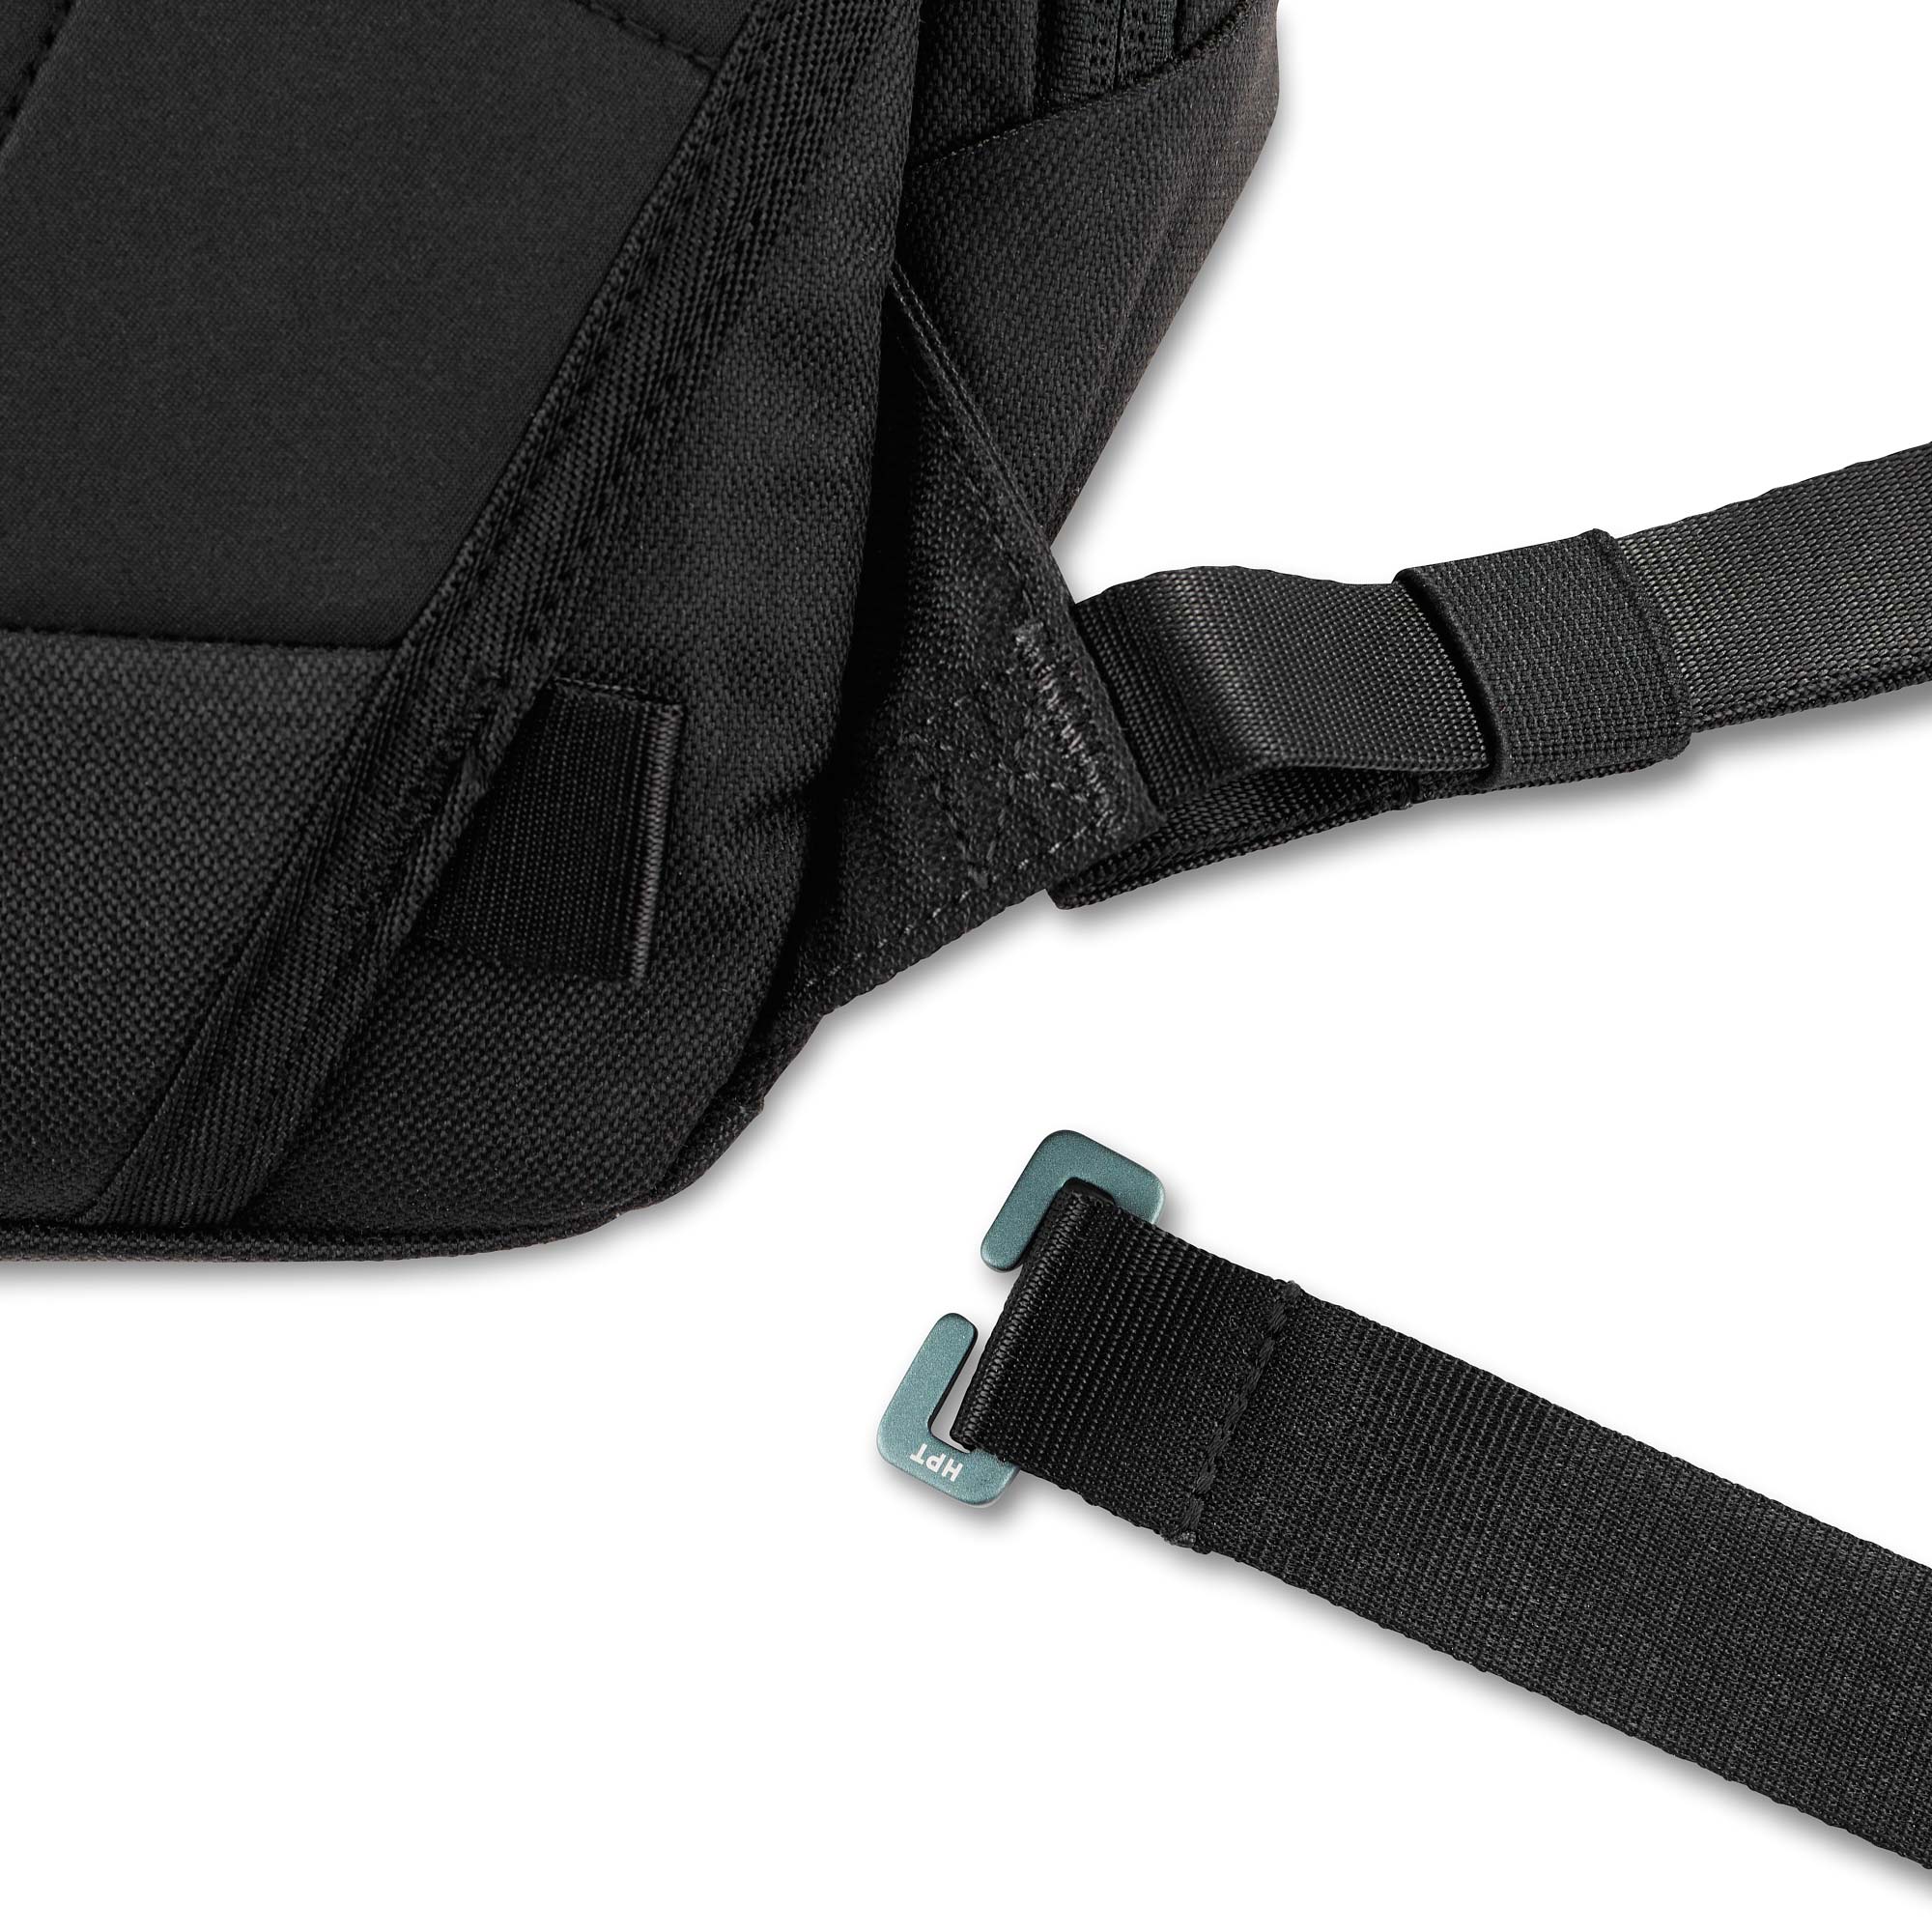 Carry Essentials Commuter Pack, dark grey